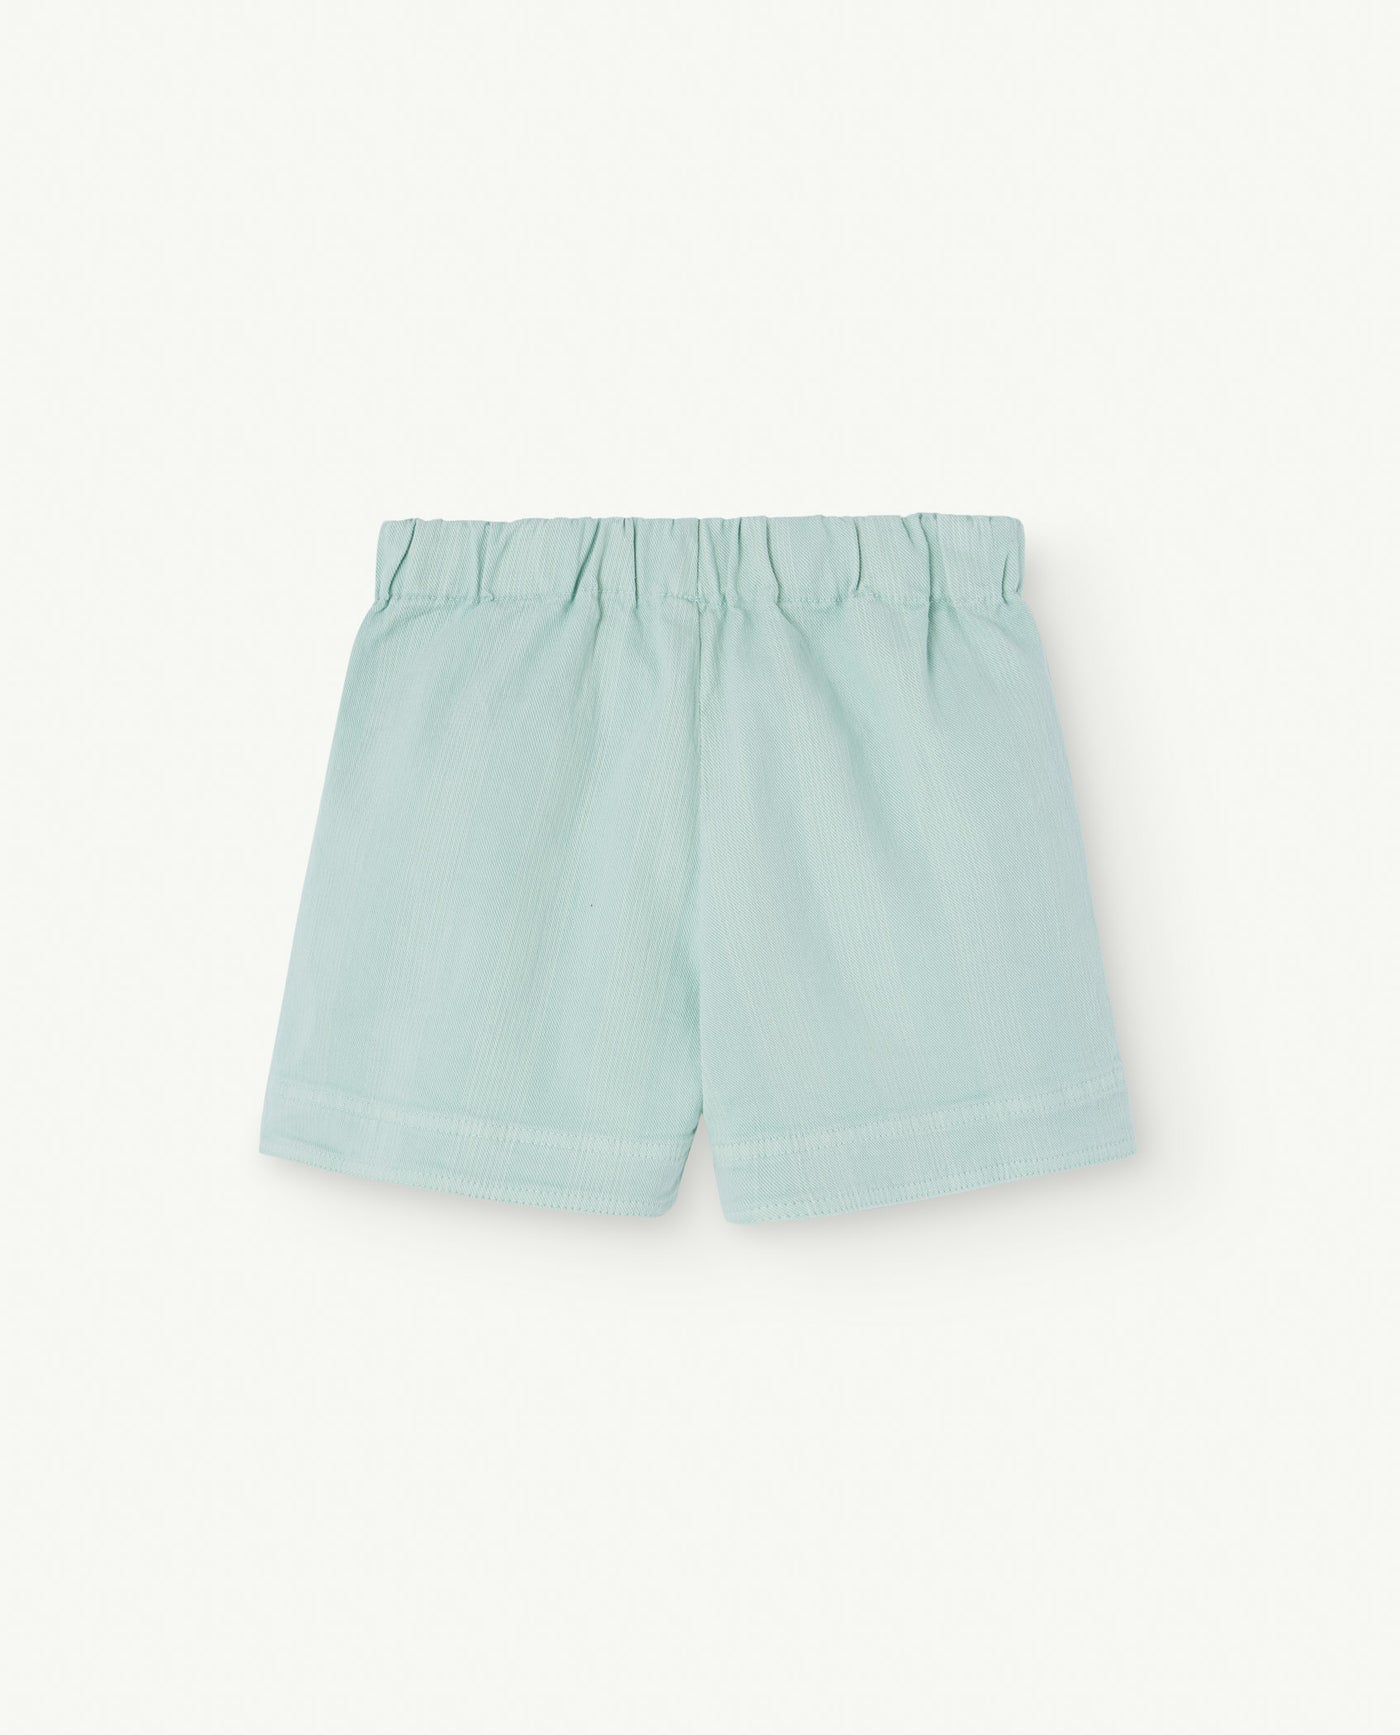 Turquoise Monkey Kids Shorts